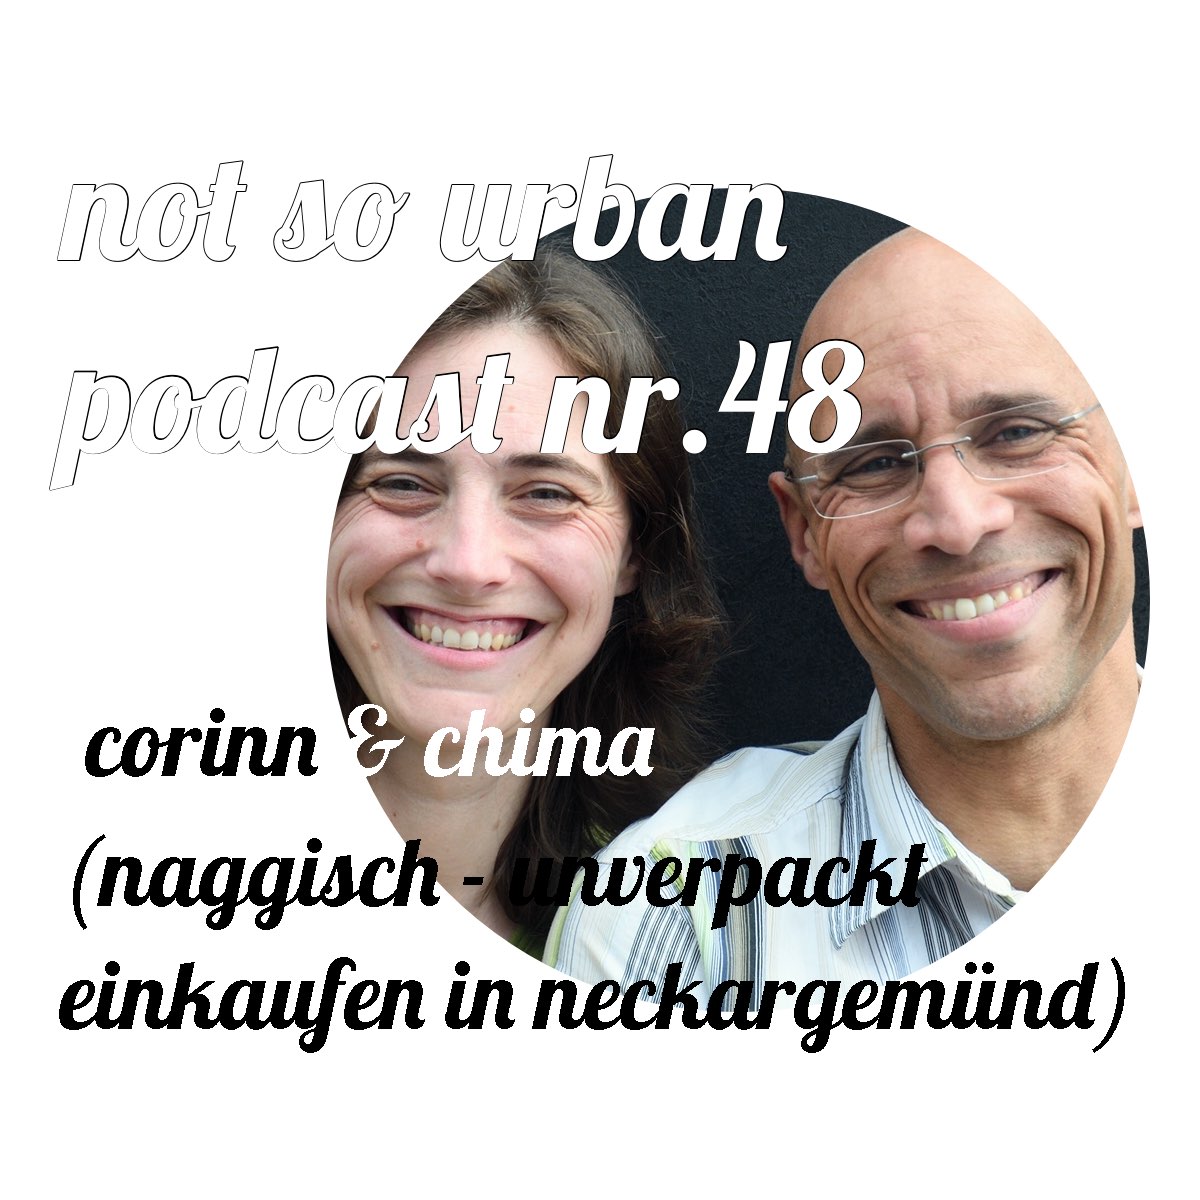 "not so urban podcast Nr. 48 - Corinne & Chima (naggisch - unverpackt einkaufen in neckargmünd)" aus not so urban Podcast von naggisch. - unverpackt. einkaufen in Neckargemünd. Cover